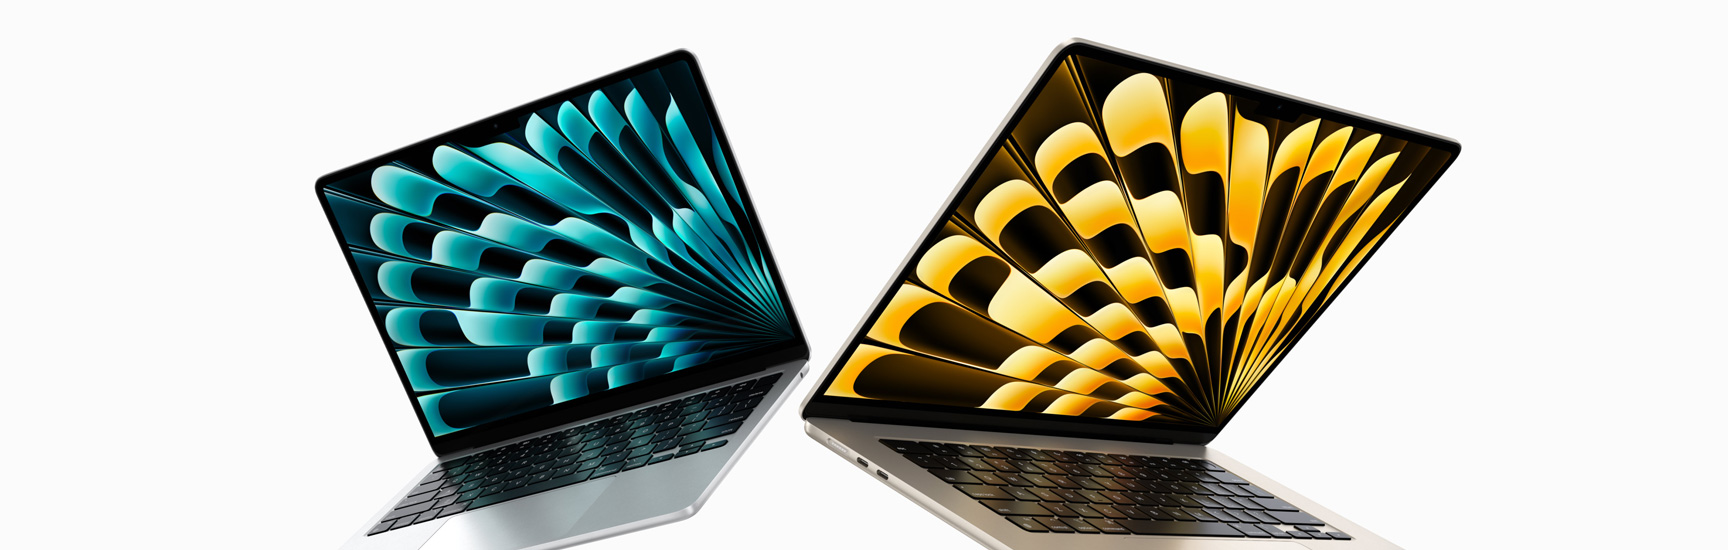 微微打開的銀色 13 吋及星光色15 吋 MacBook Air 型號正面圖，展示不同顯示器尺寸。